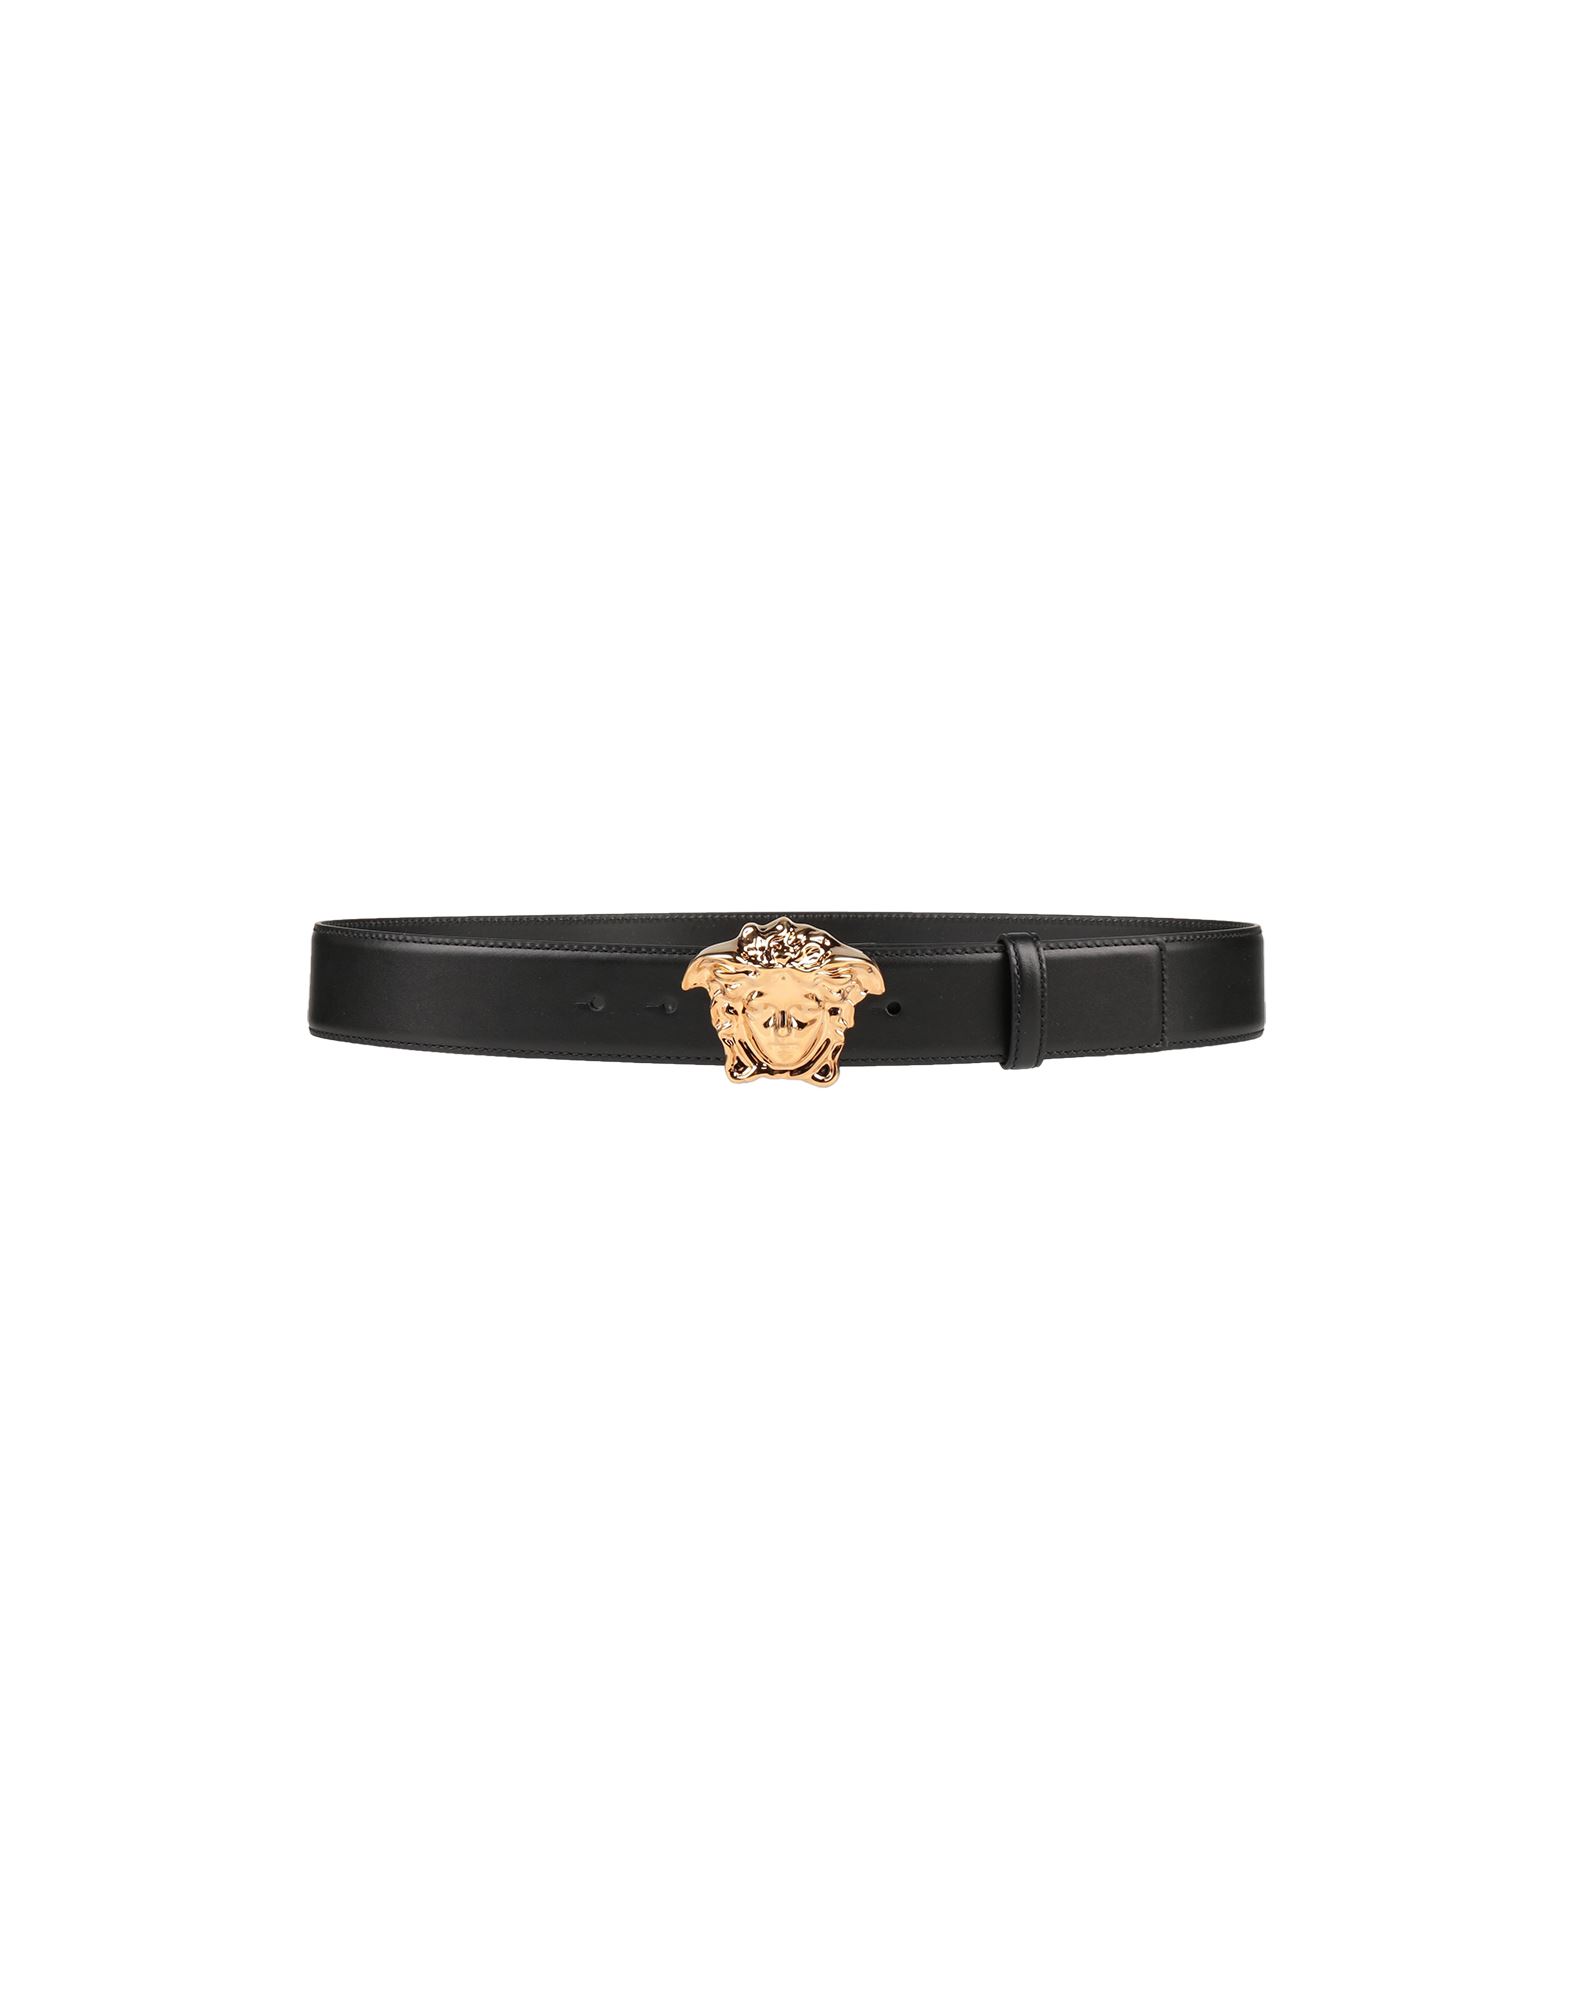 Shop Versace Man Belt Black Size 34 Calfskin